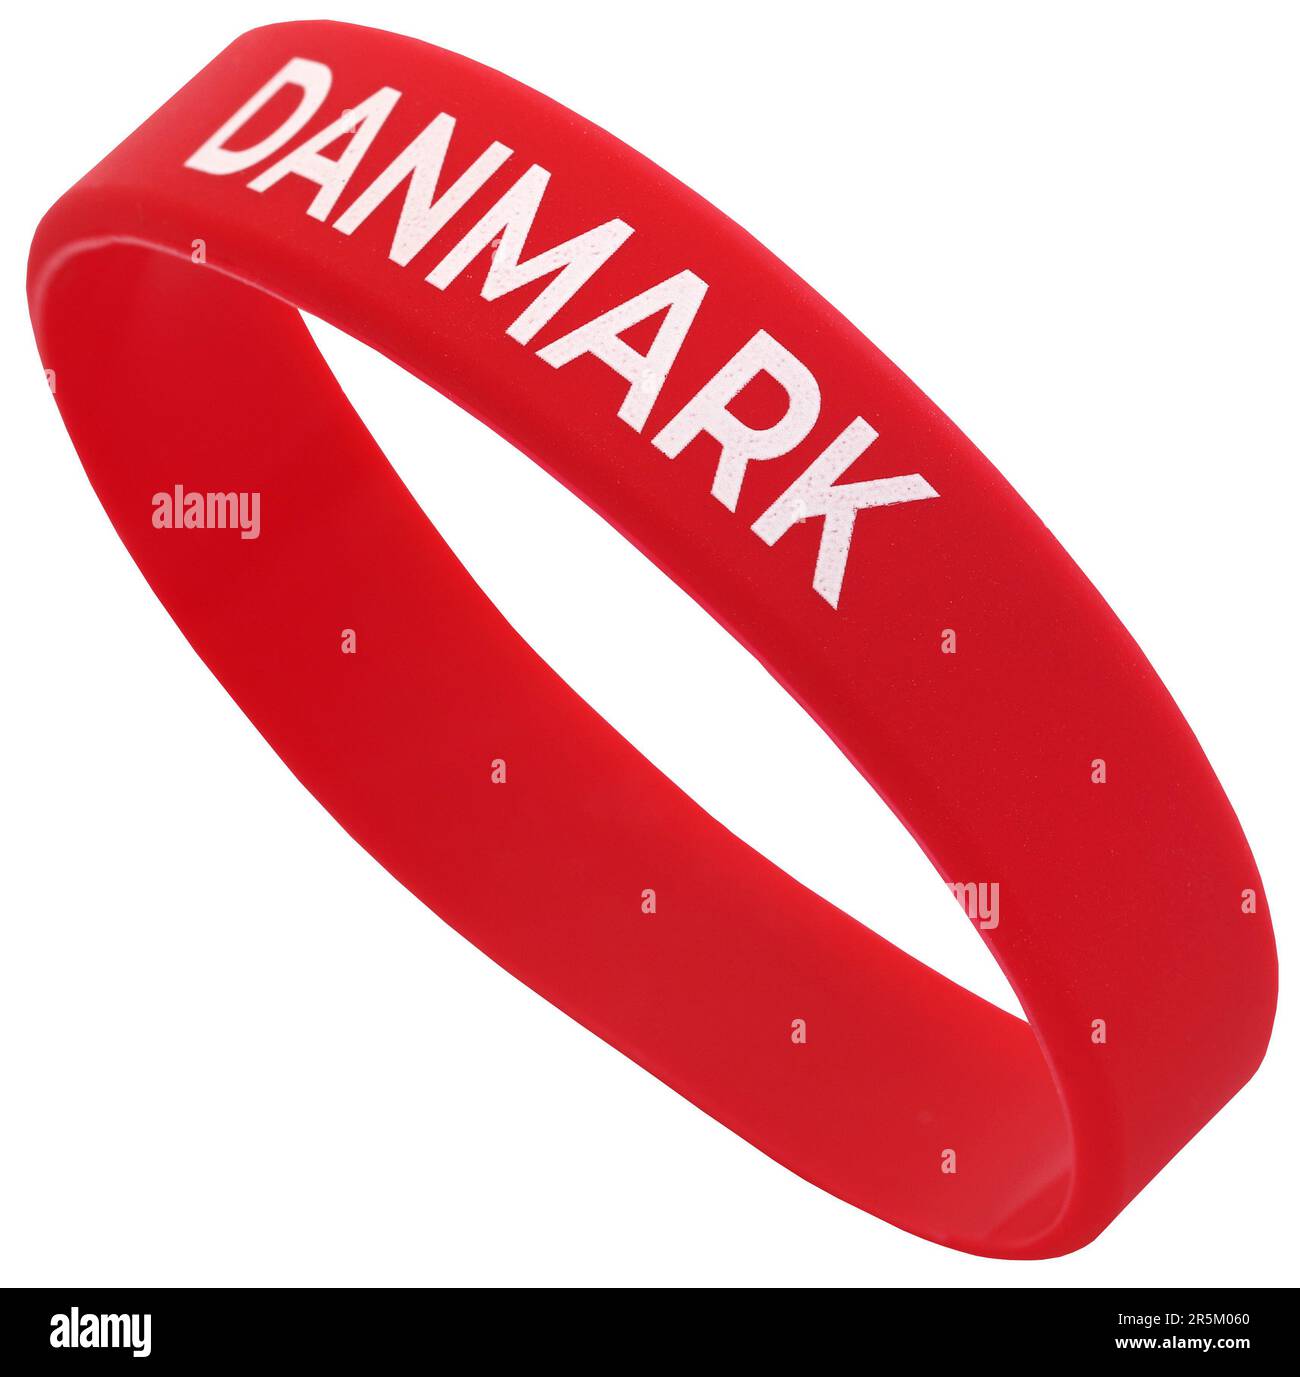 Braccialetto o braccialetto rosso con scritta Denamark in lettere bianche Foto Stock